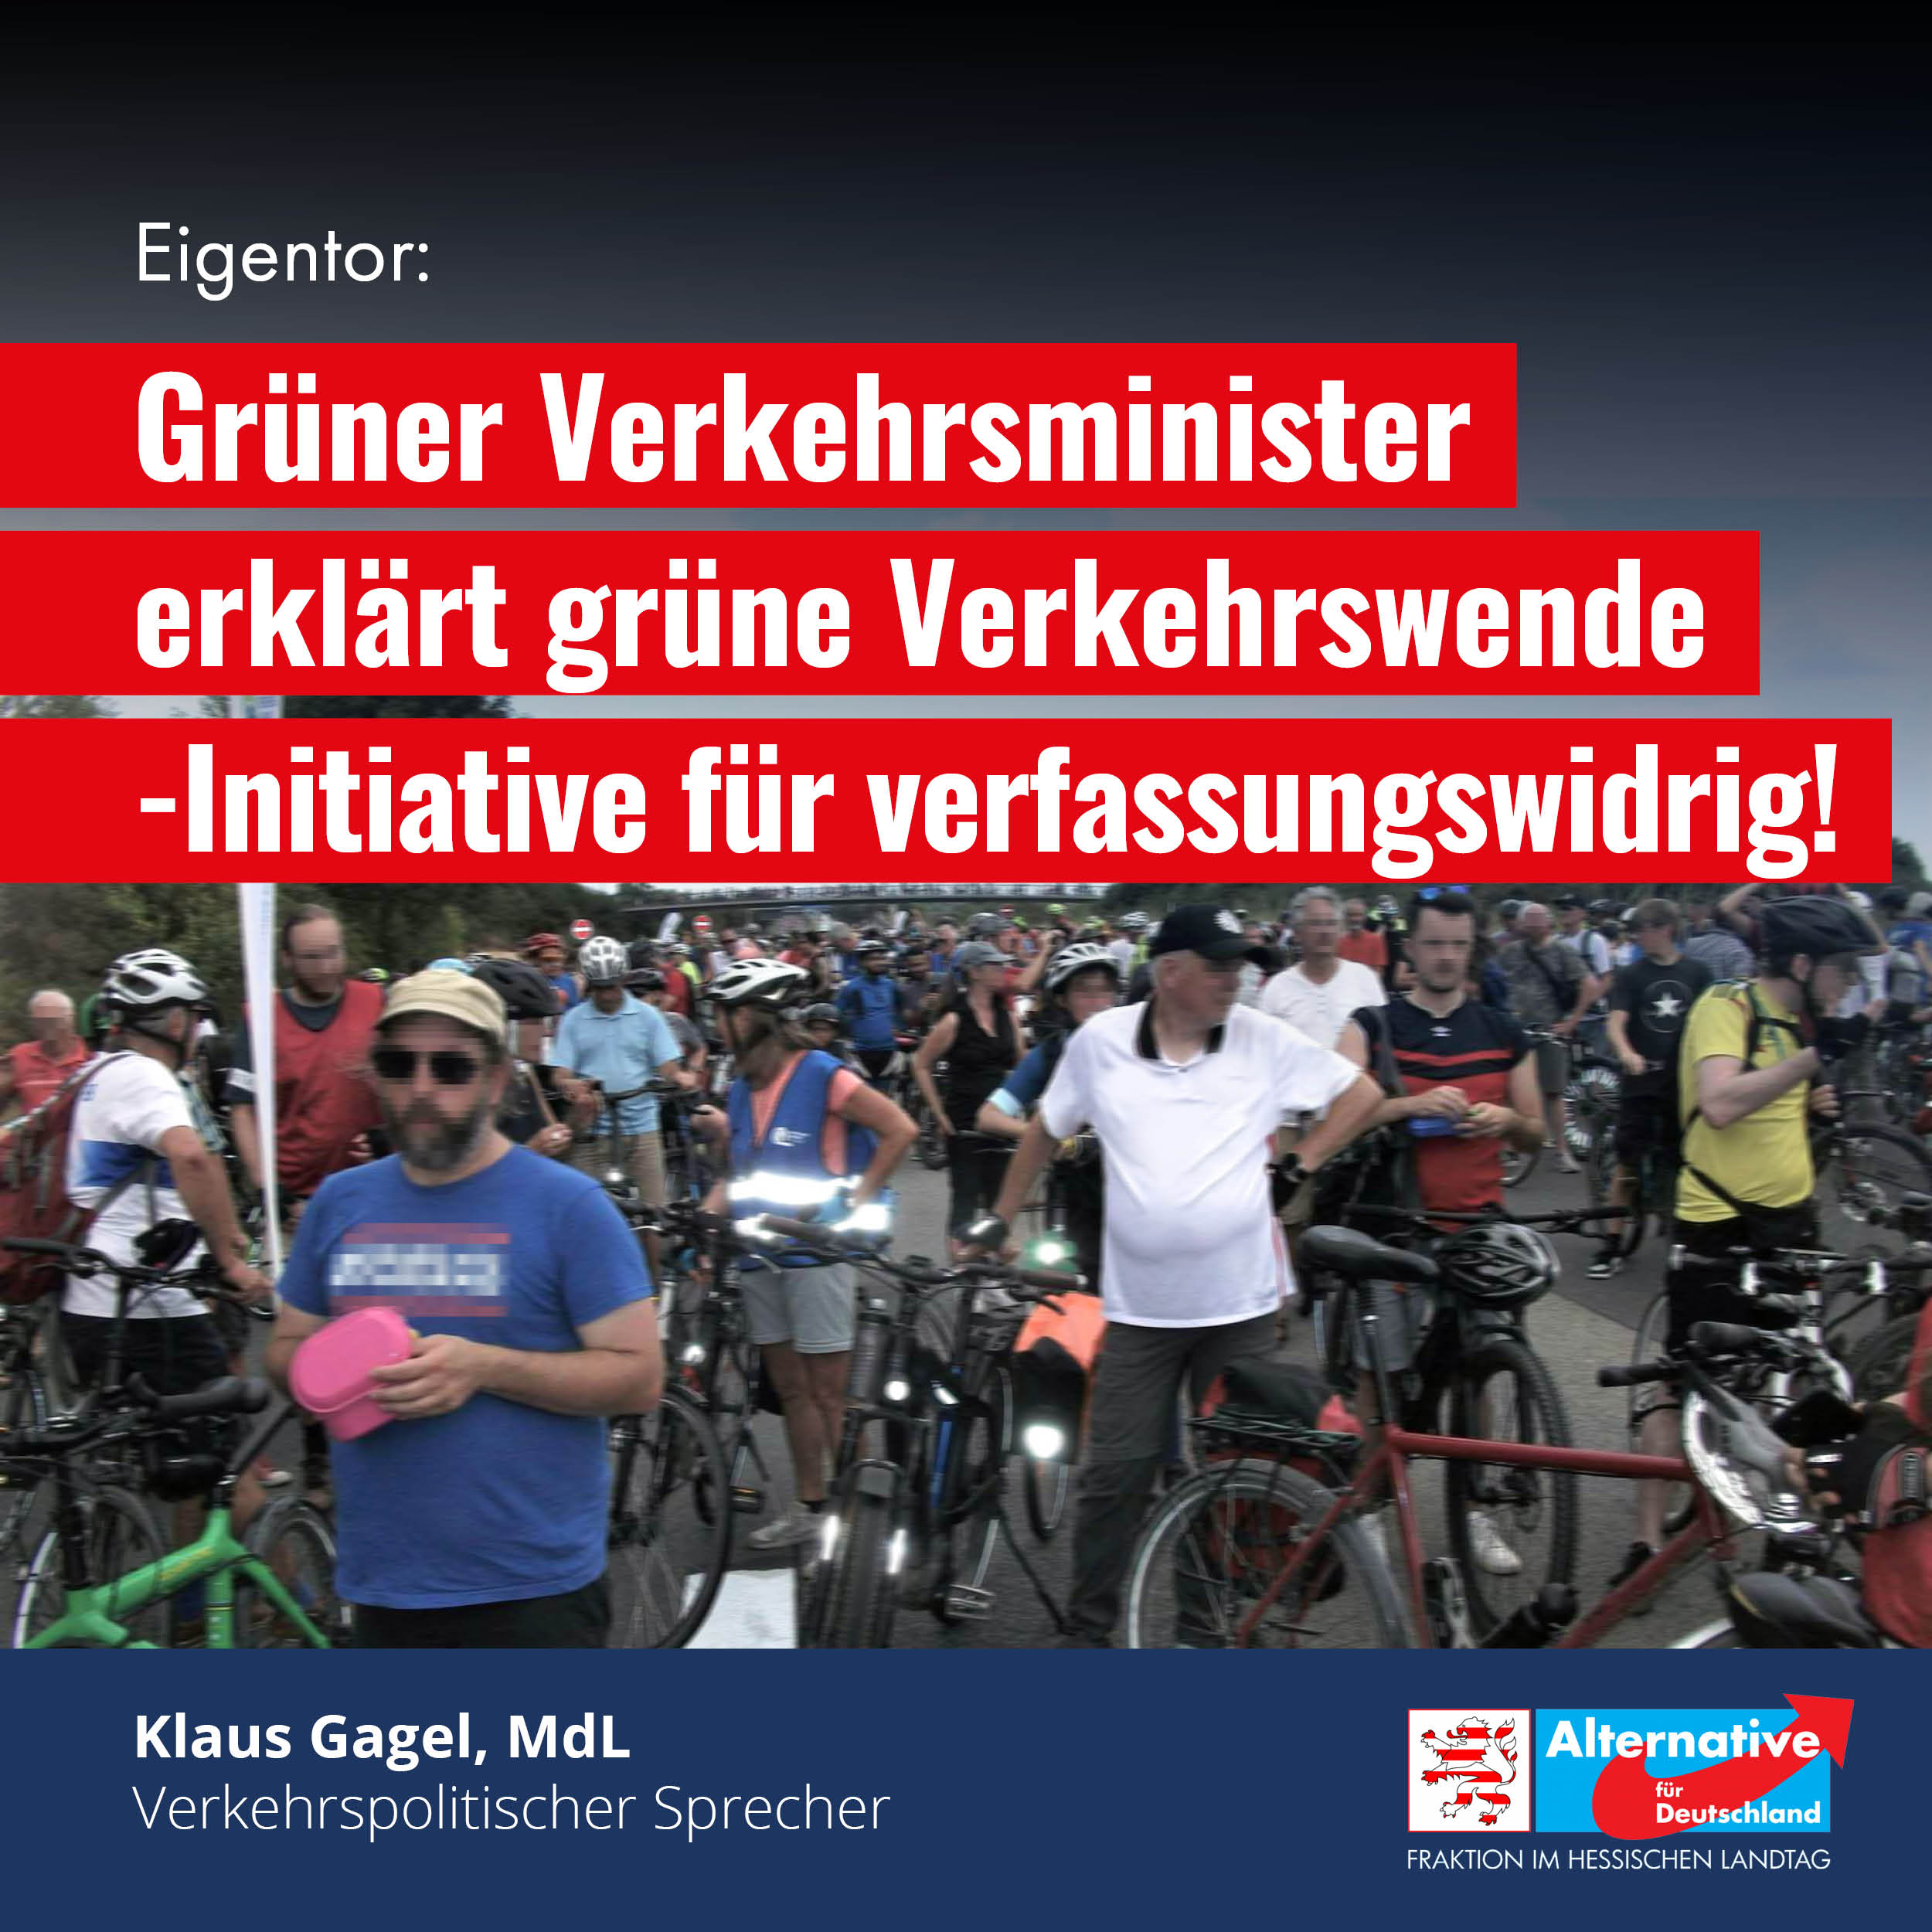 Read more about the article Grüner Verkehrsminister erklärt grüne Verkehrswende-Initiative für verfassungswidrig!